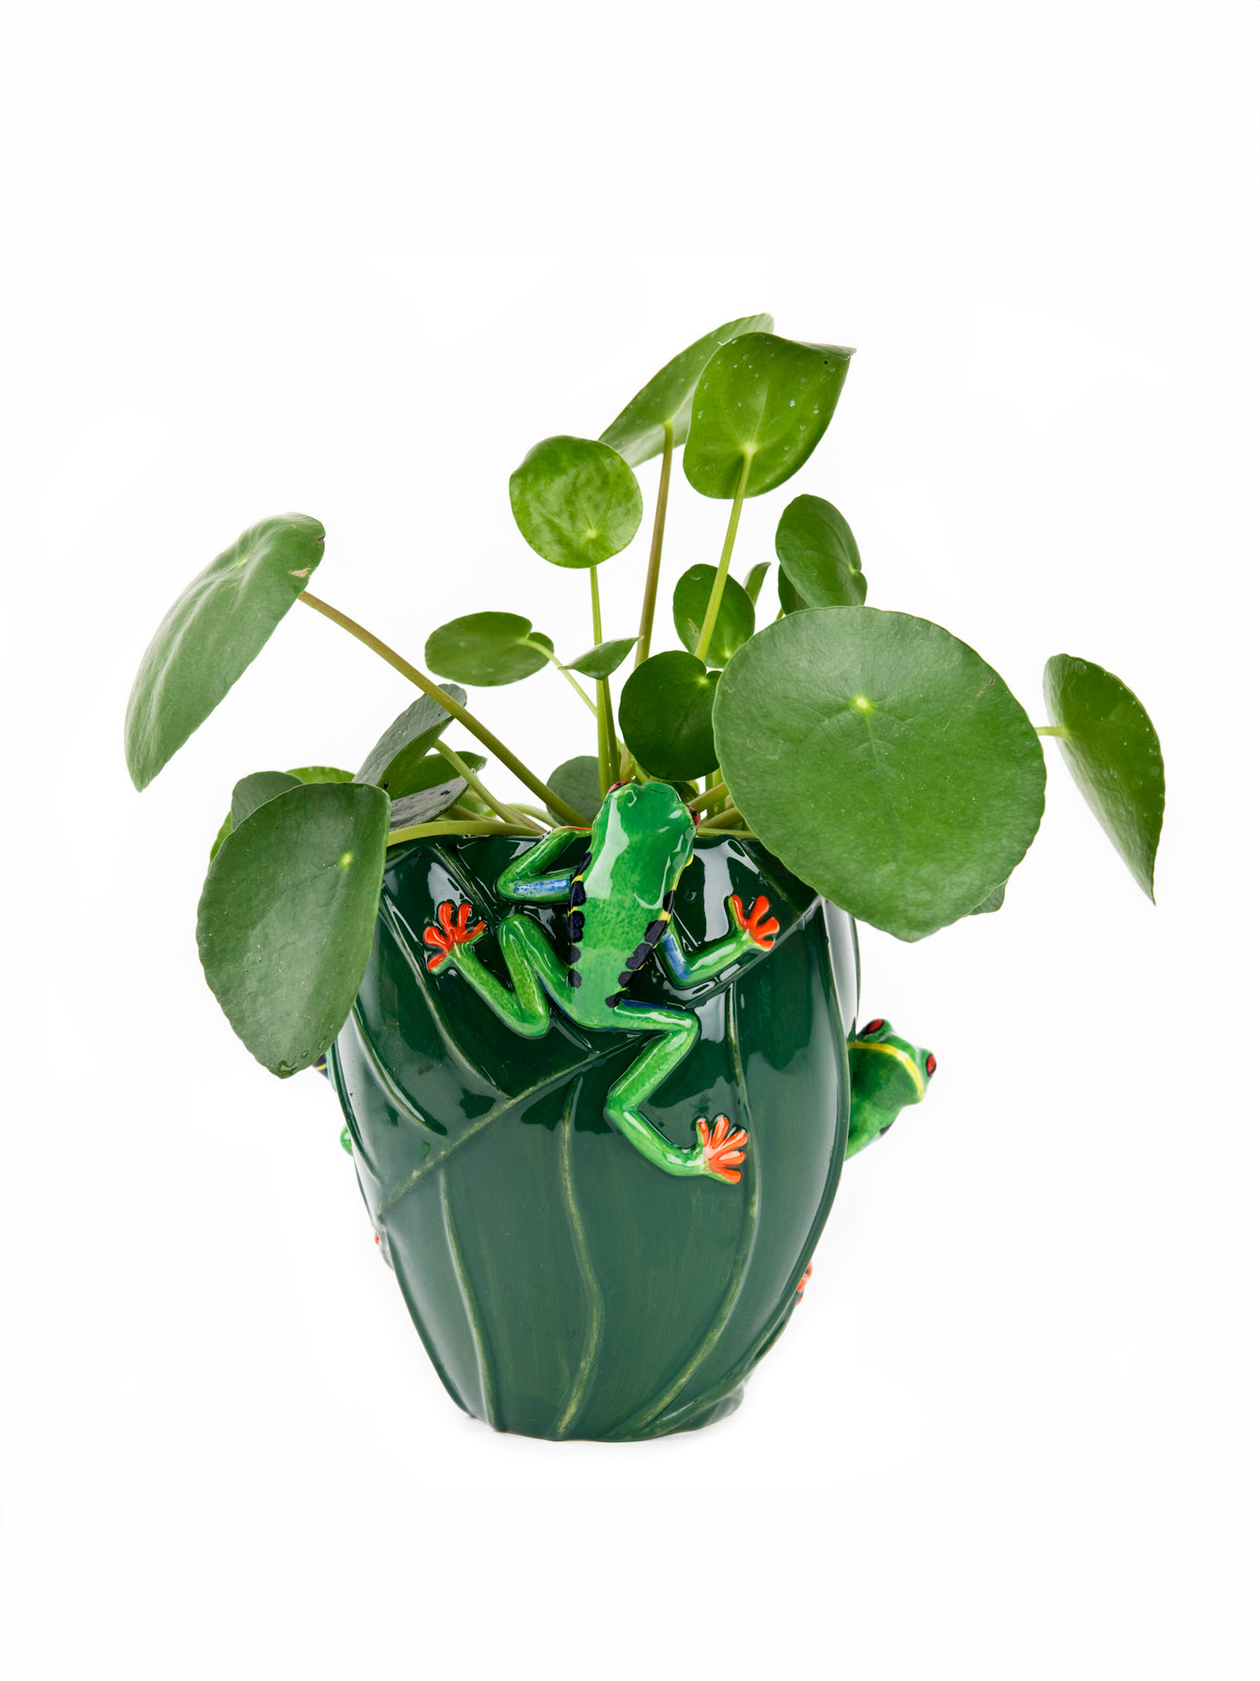 flower-vase-tree-frog-with-plant-02-31027-kopier.jpg